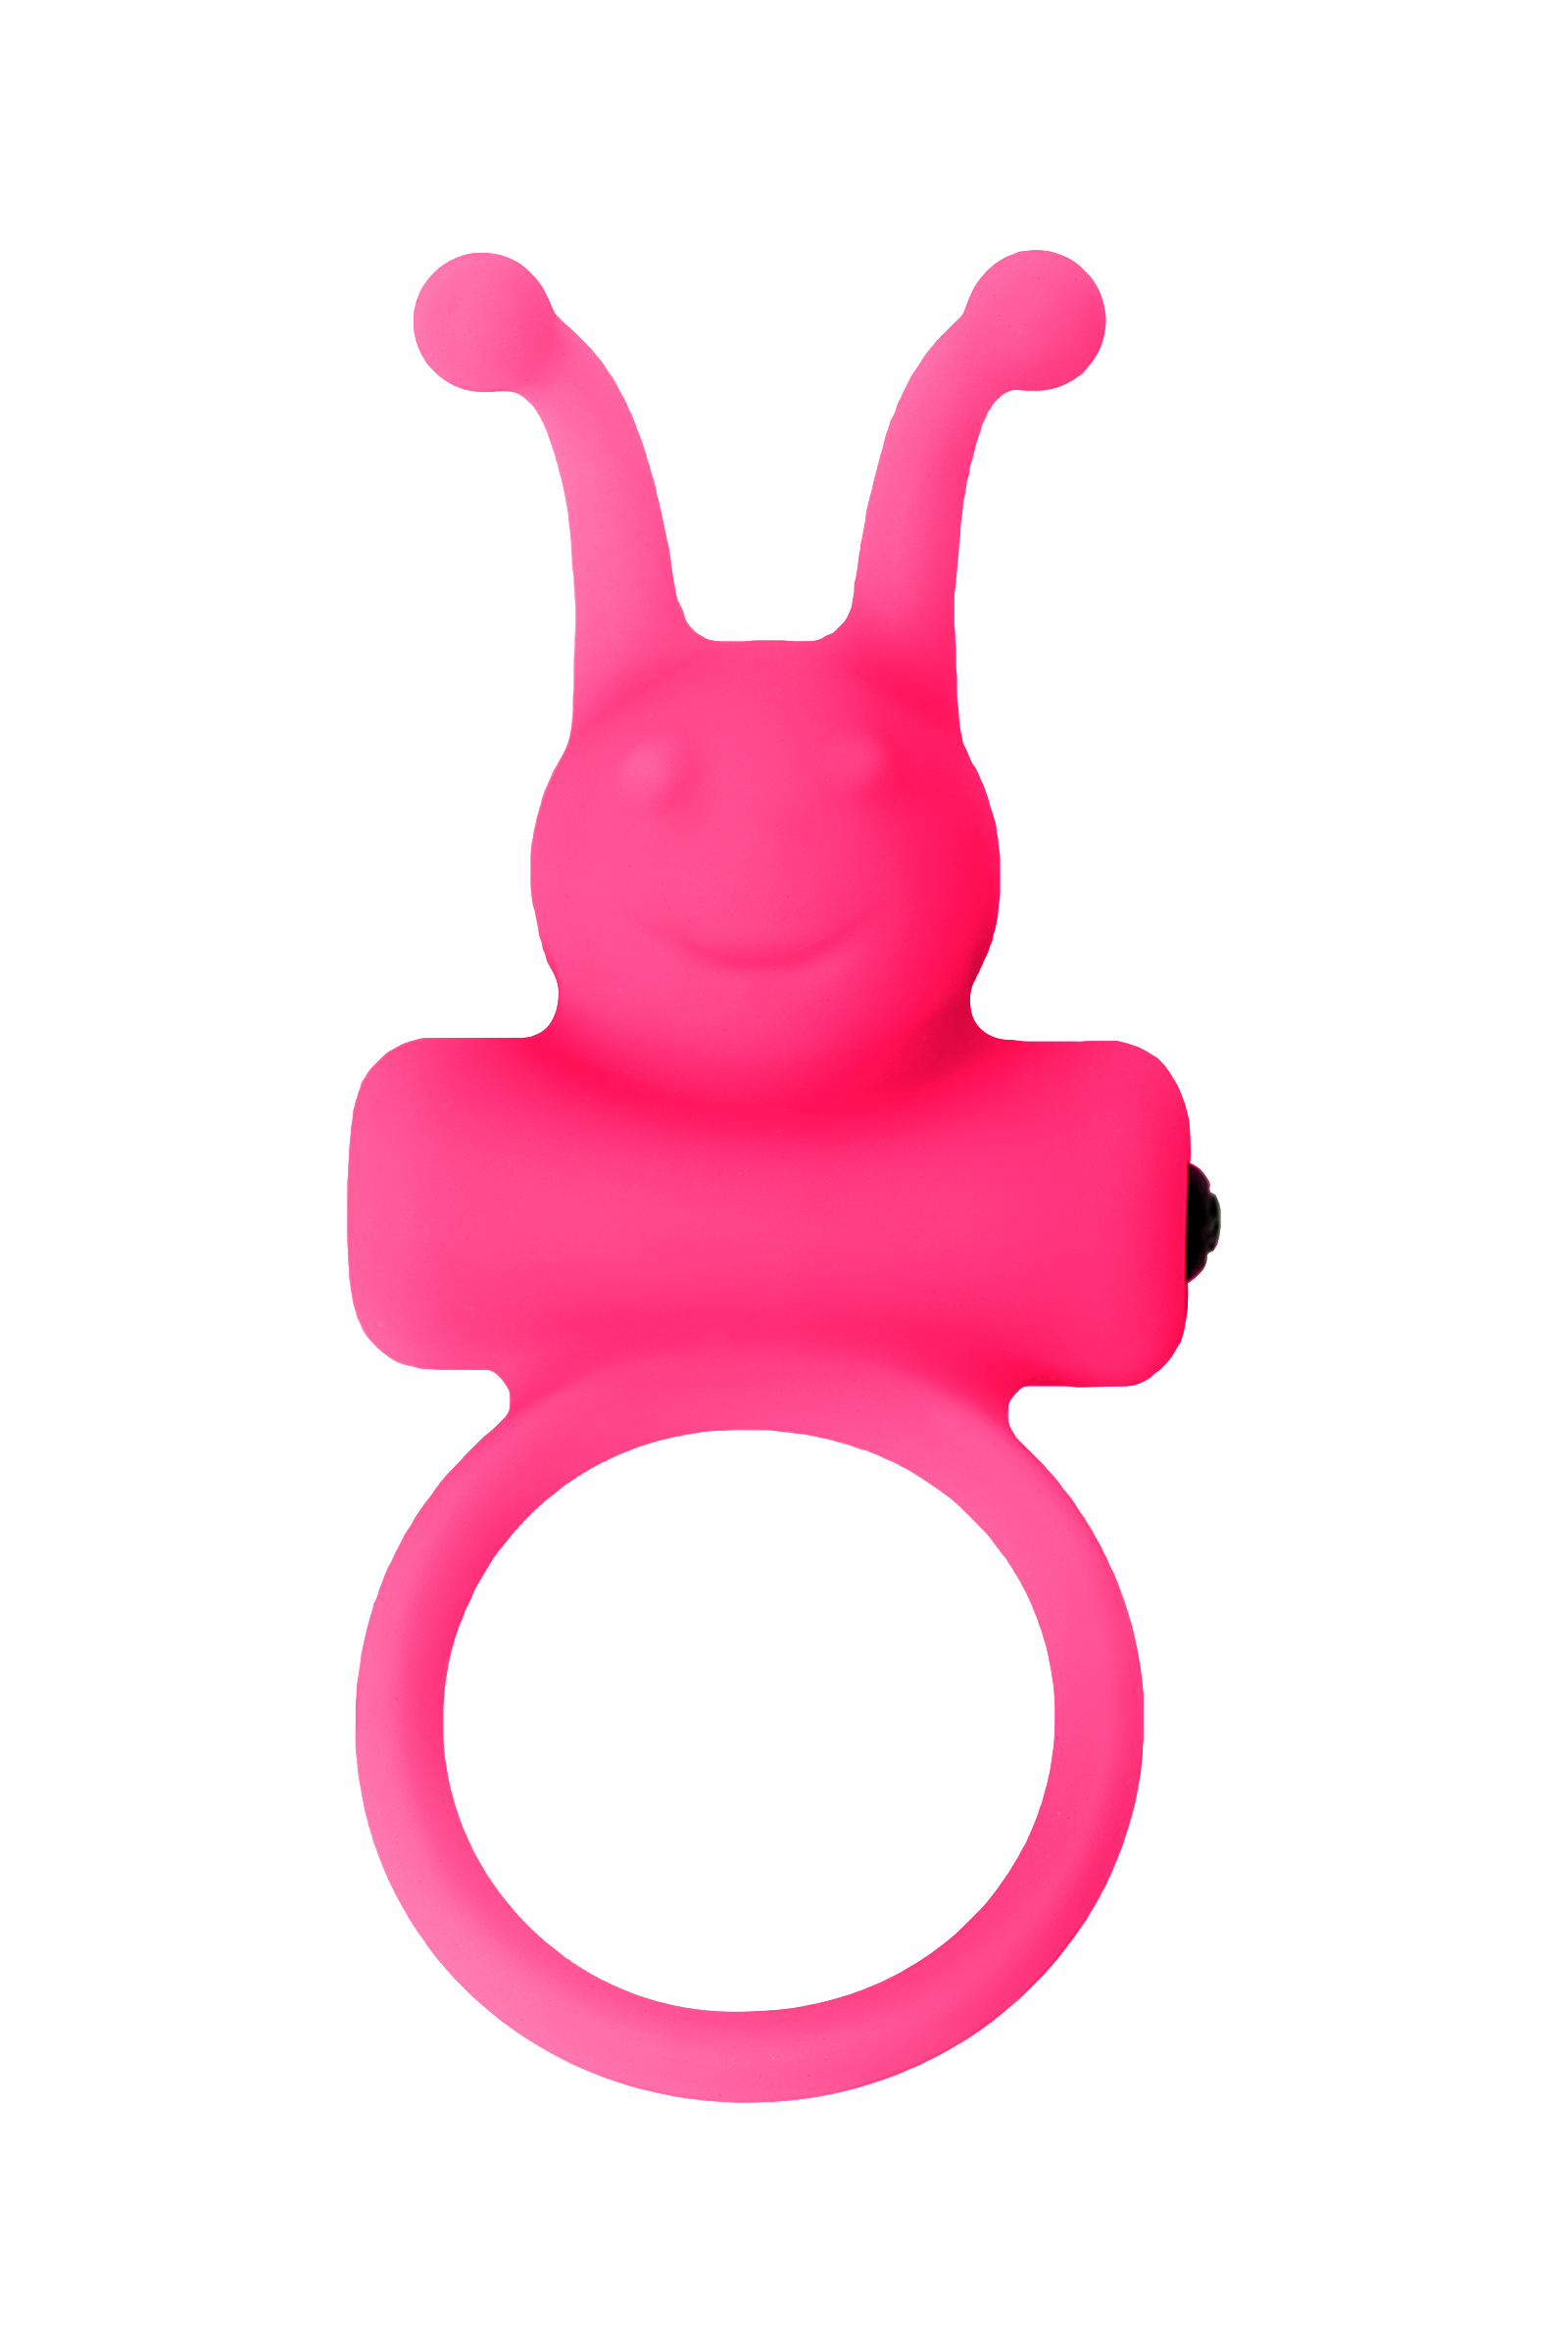 Силиконовое эрекционное кольцо на пенис Eromantica розовое 3,1 см